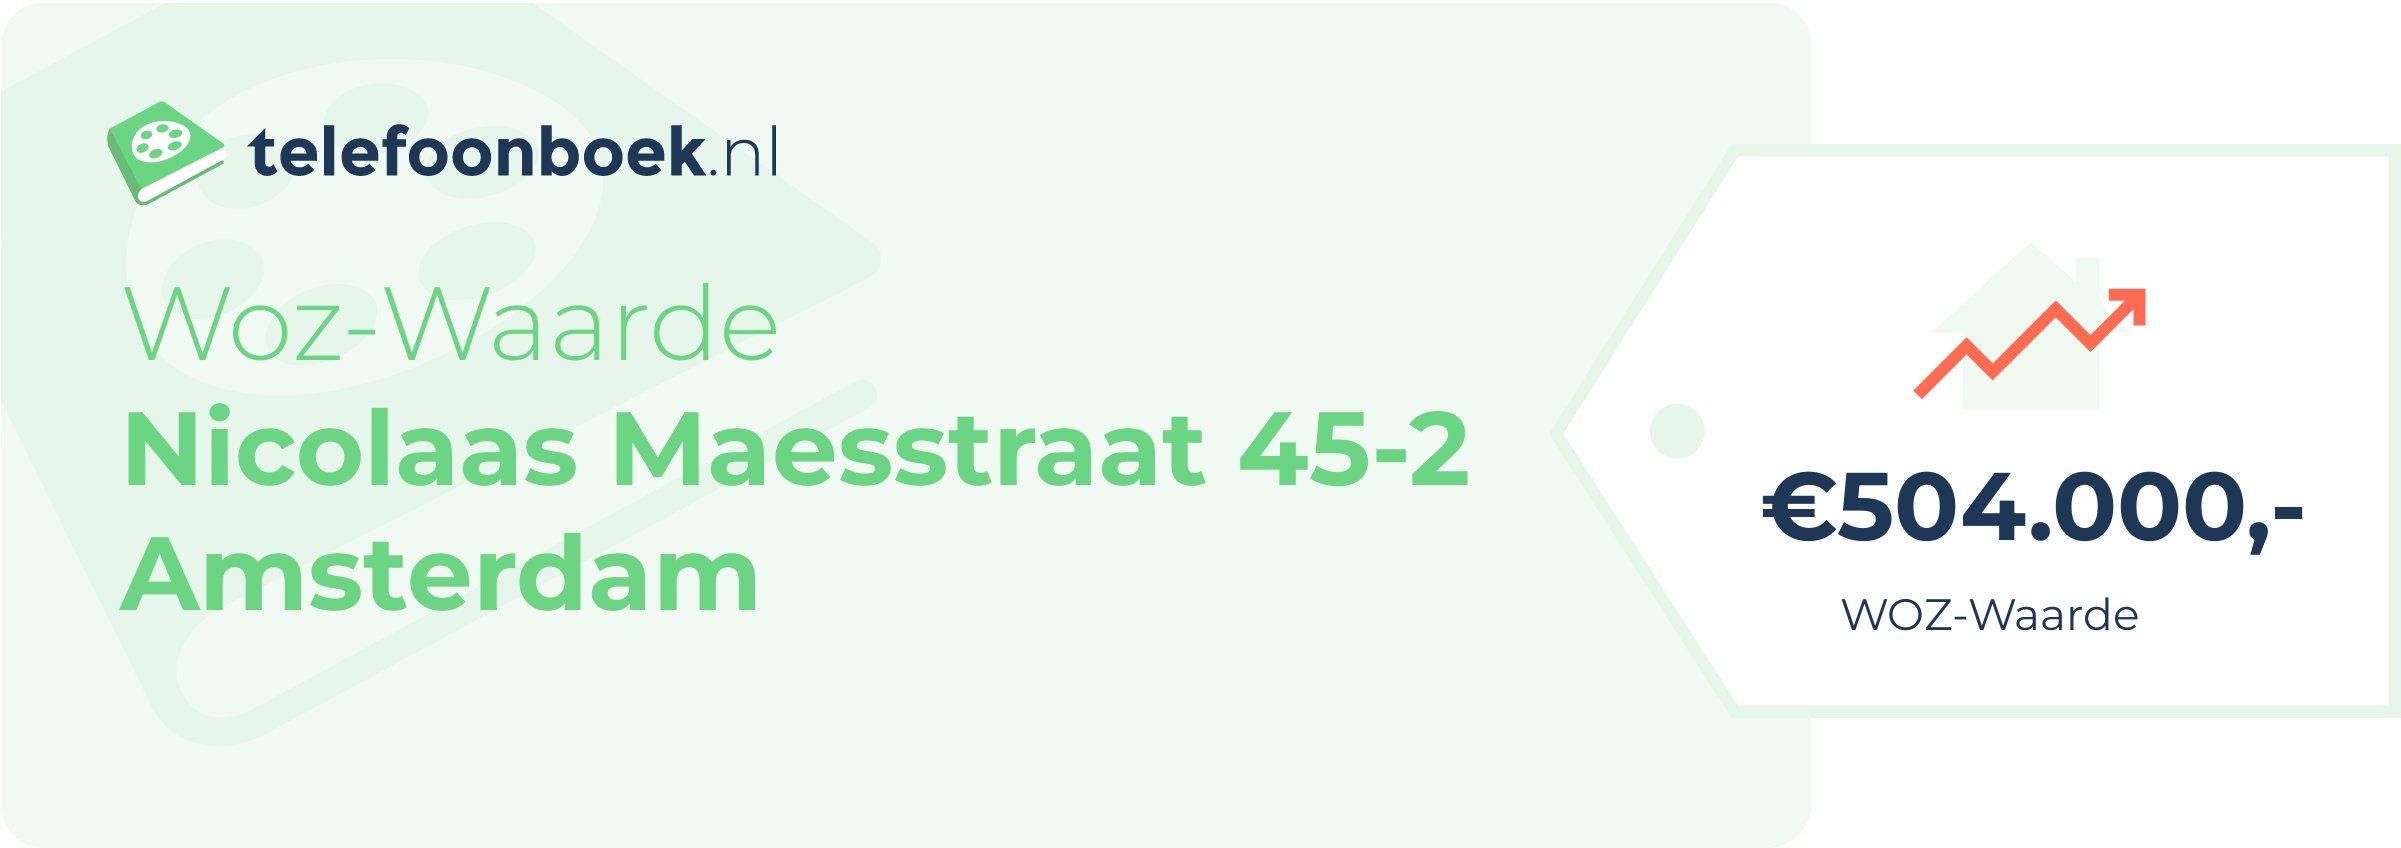 WOZ-waarde Nicolaas Maesstraat 45-2 Amsterdam